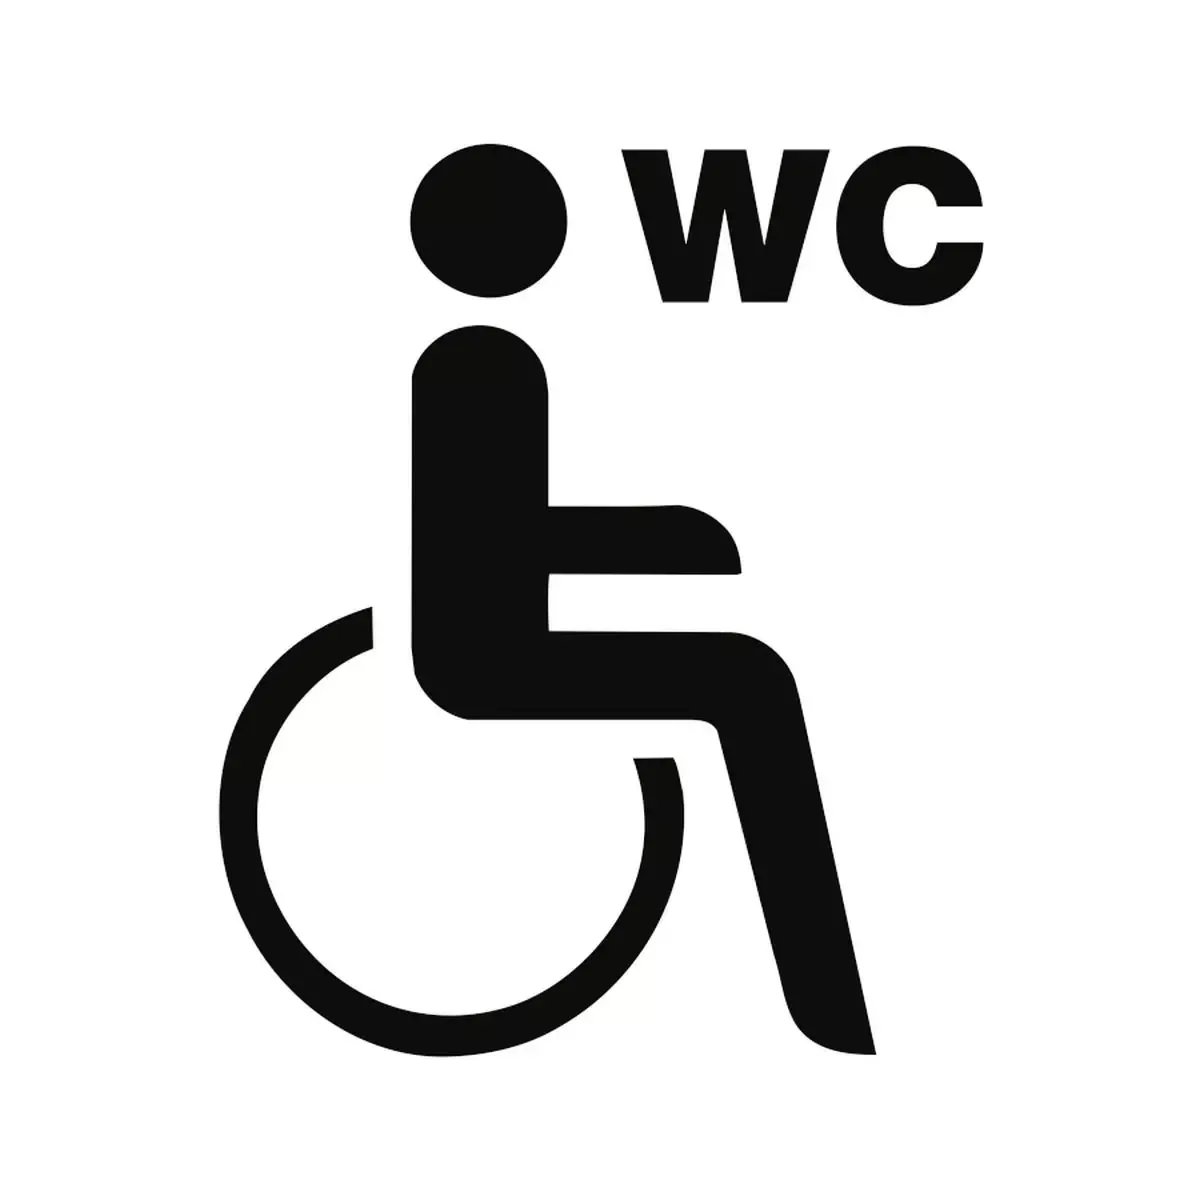 Piktogramm WC Behinderte/barrierefrei mit Text WC, Kunststoff, 160x160 mm